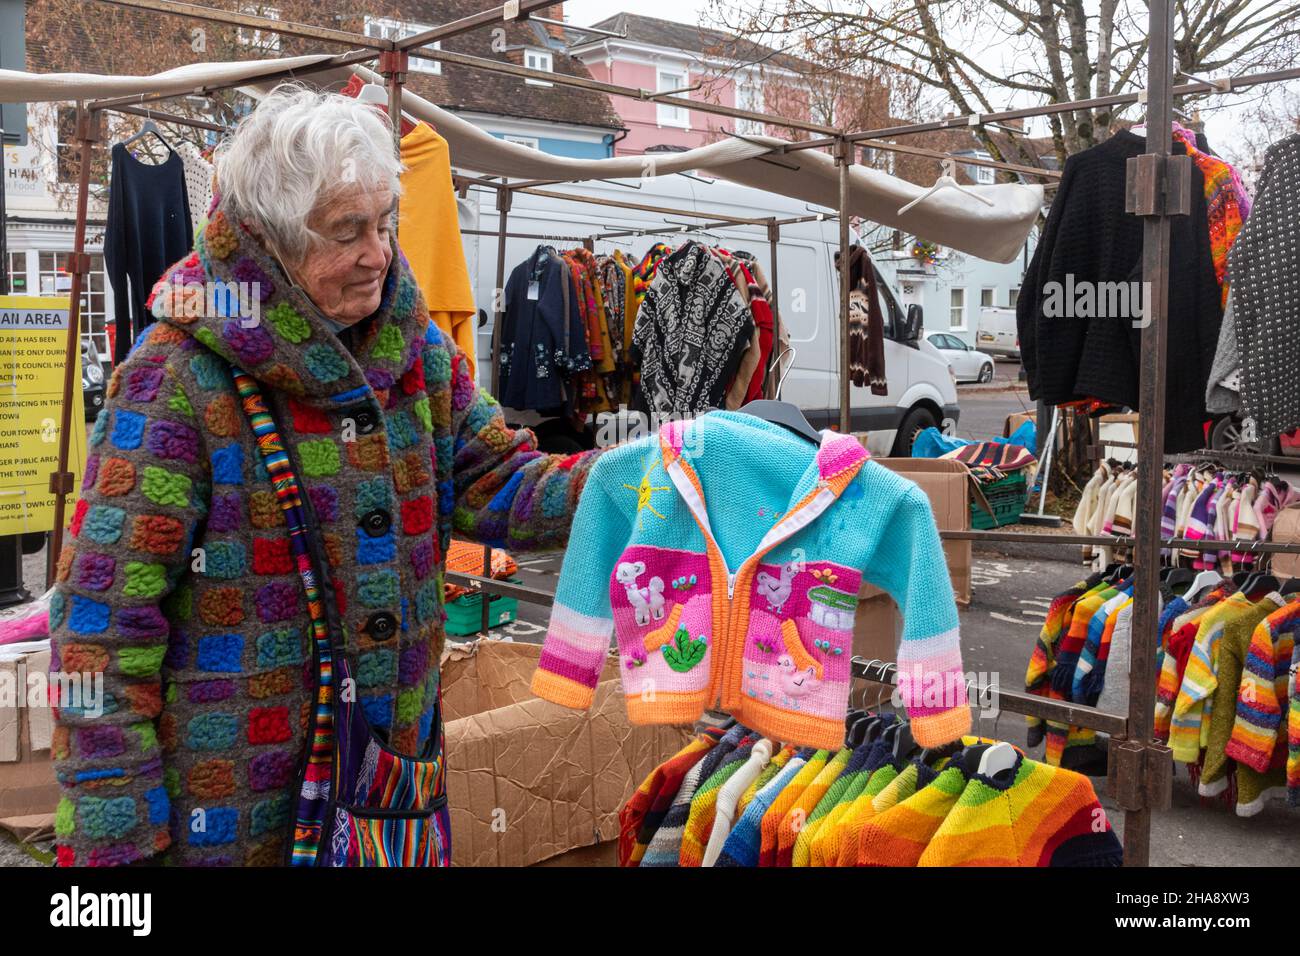 Femme senior travaillant sur un marché vendant des vestes en laine faites à la main aux couleurs vives, des pulls, des cardigans, Royaume-Uni.Fournisseur du marché. Banque D'Images